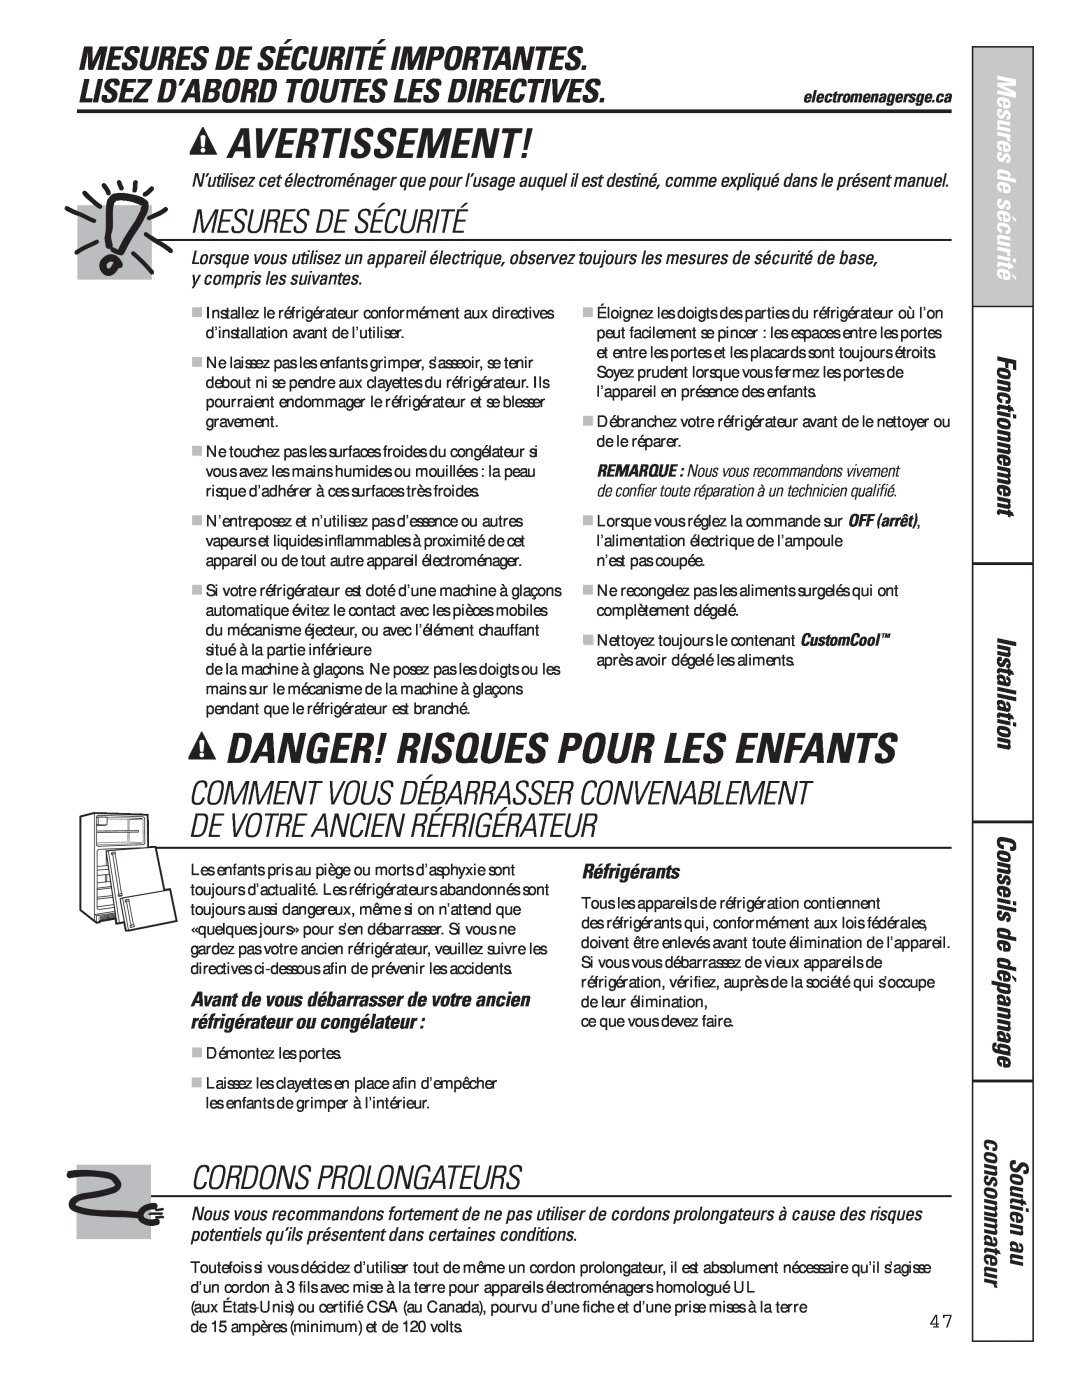 GE 200D8074P043 Avertissement, Danger! Risques Pour Les Enfants, Mesures De Sécurité Importantes, Cordons Prolongateurs 